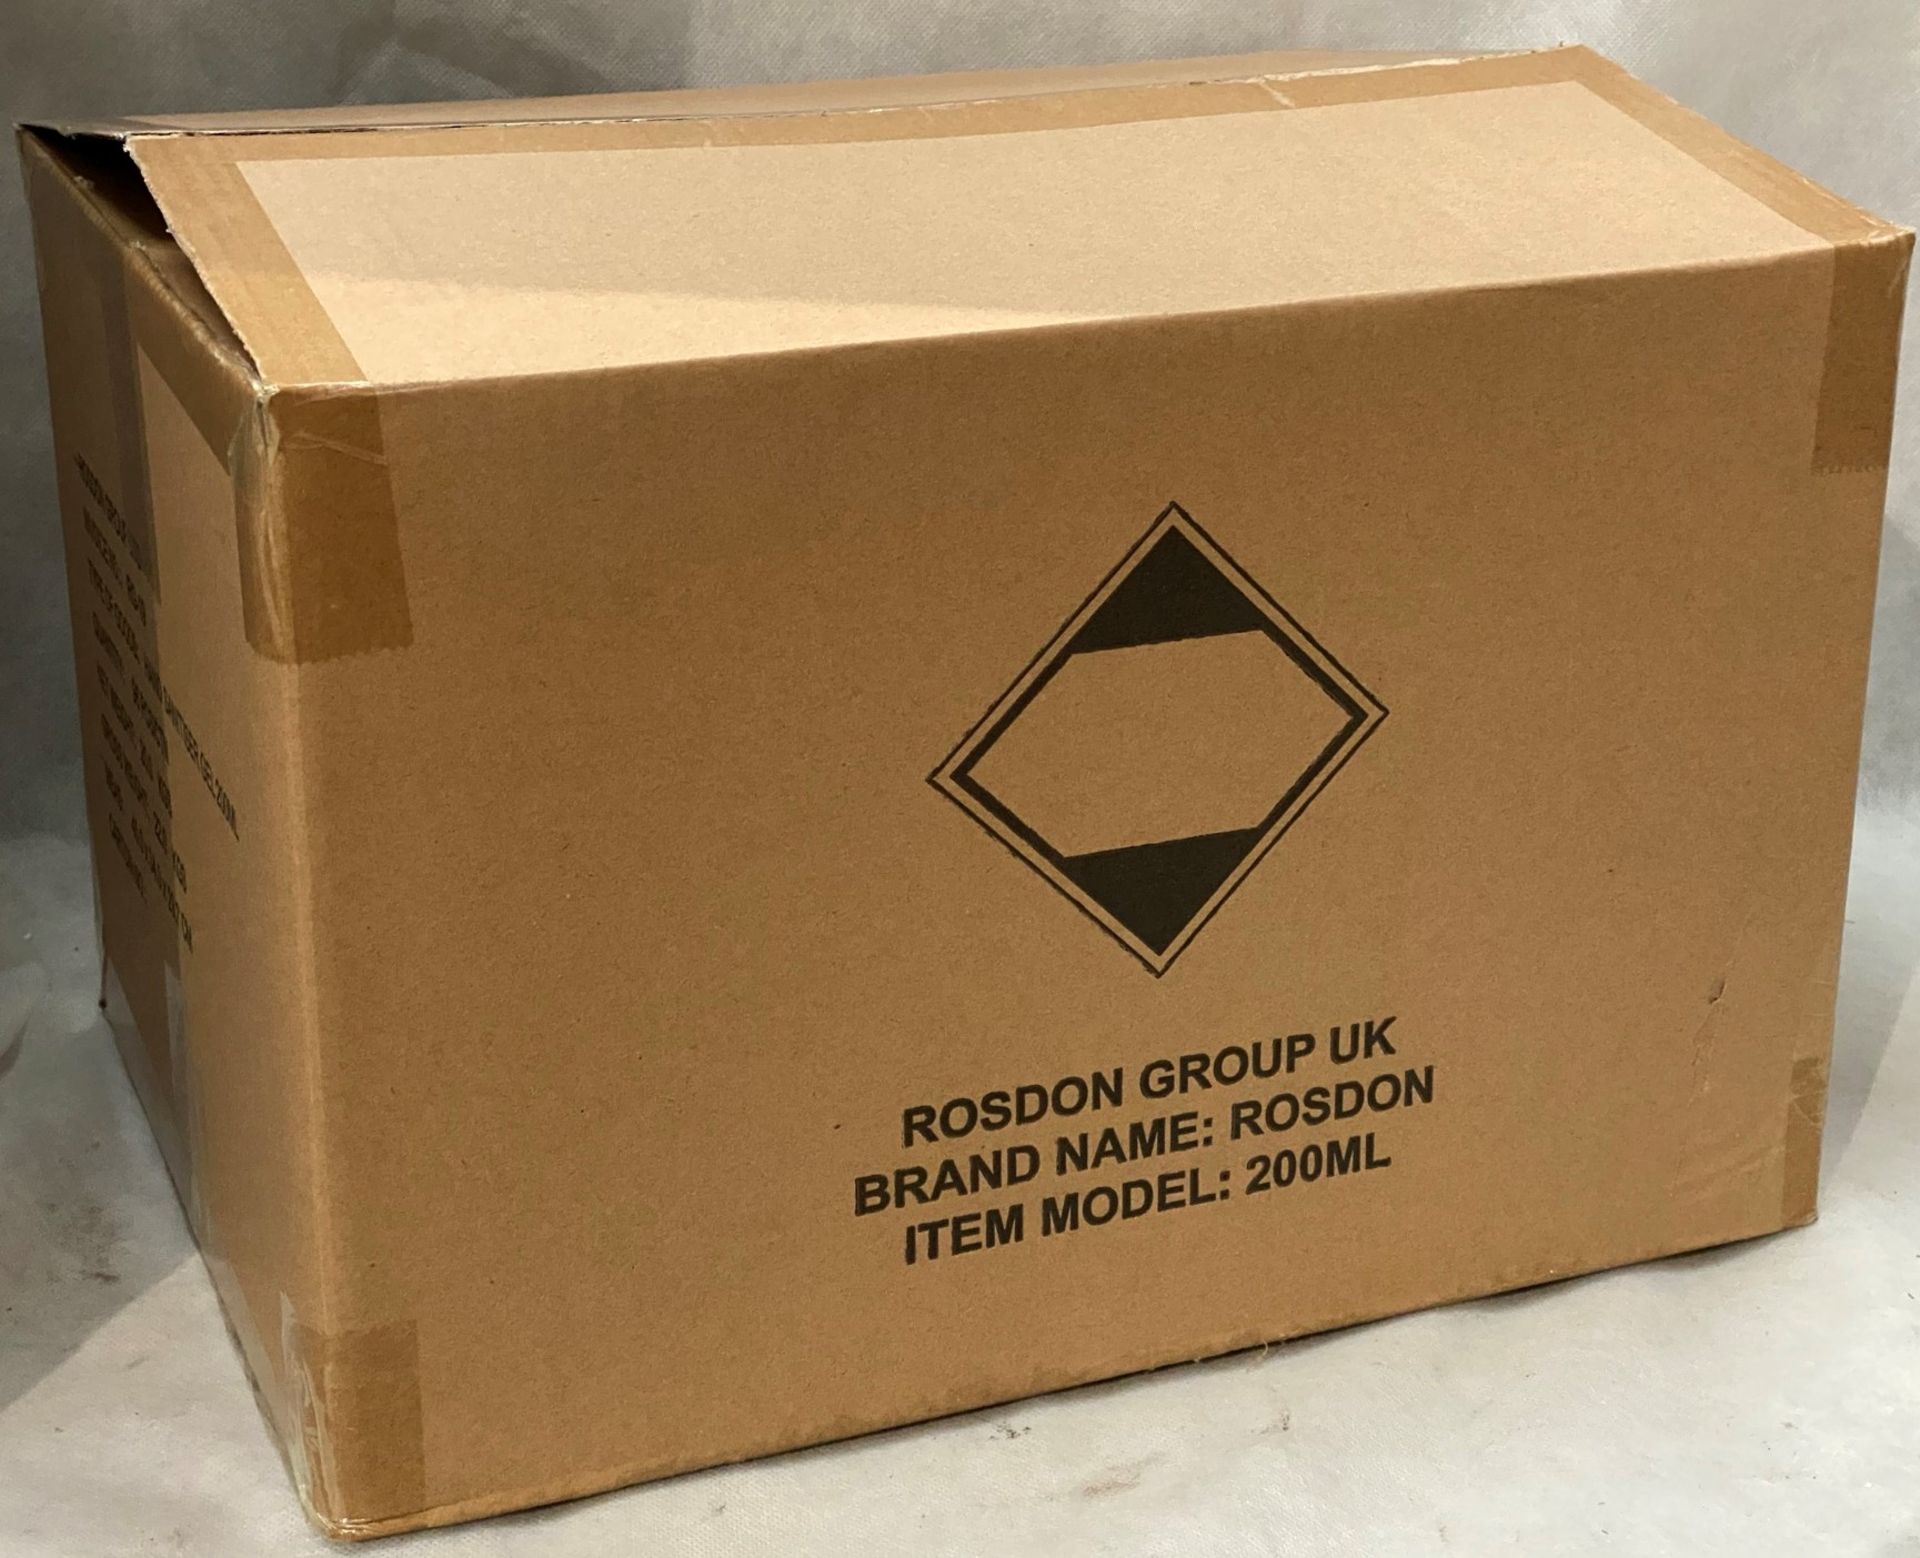 96 x 200ml flip top bottles of Rosdon Group UK hand sanitiser - 1 outer box. - Image 3 of 5